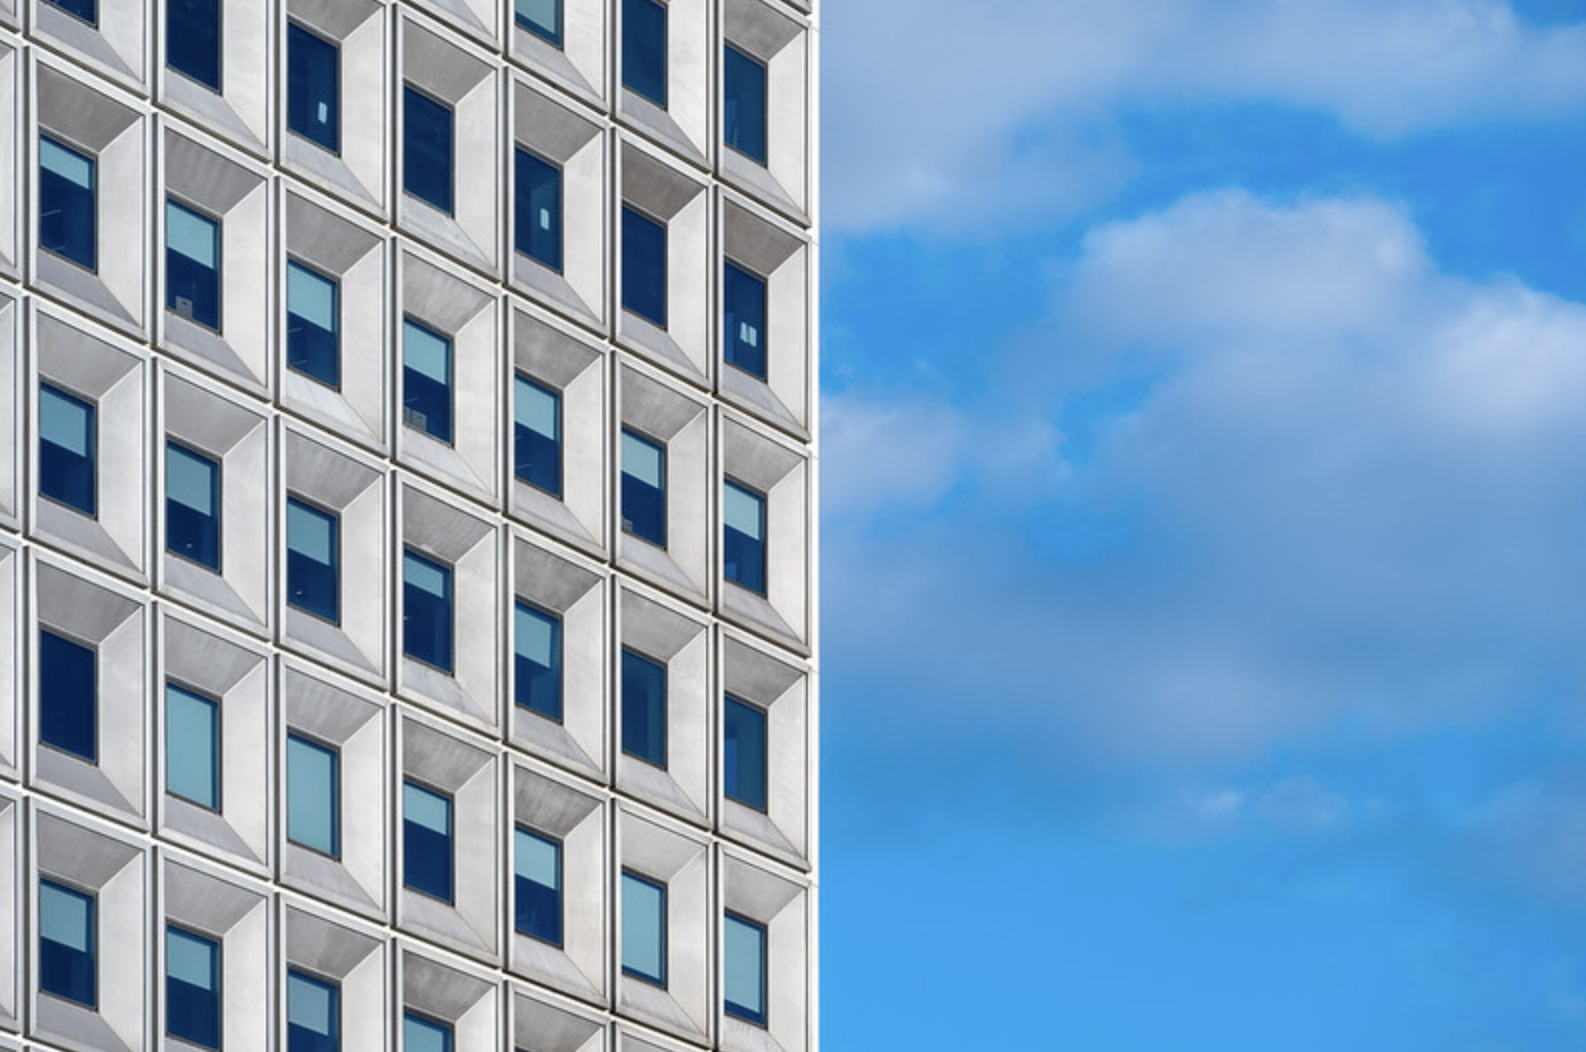 a modern building against a blue sky